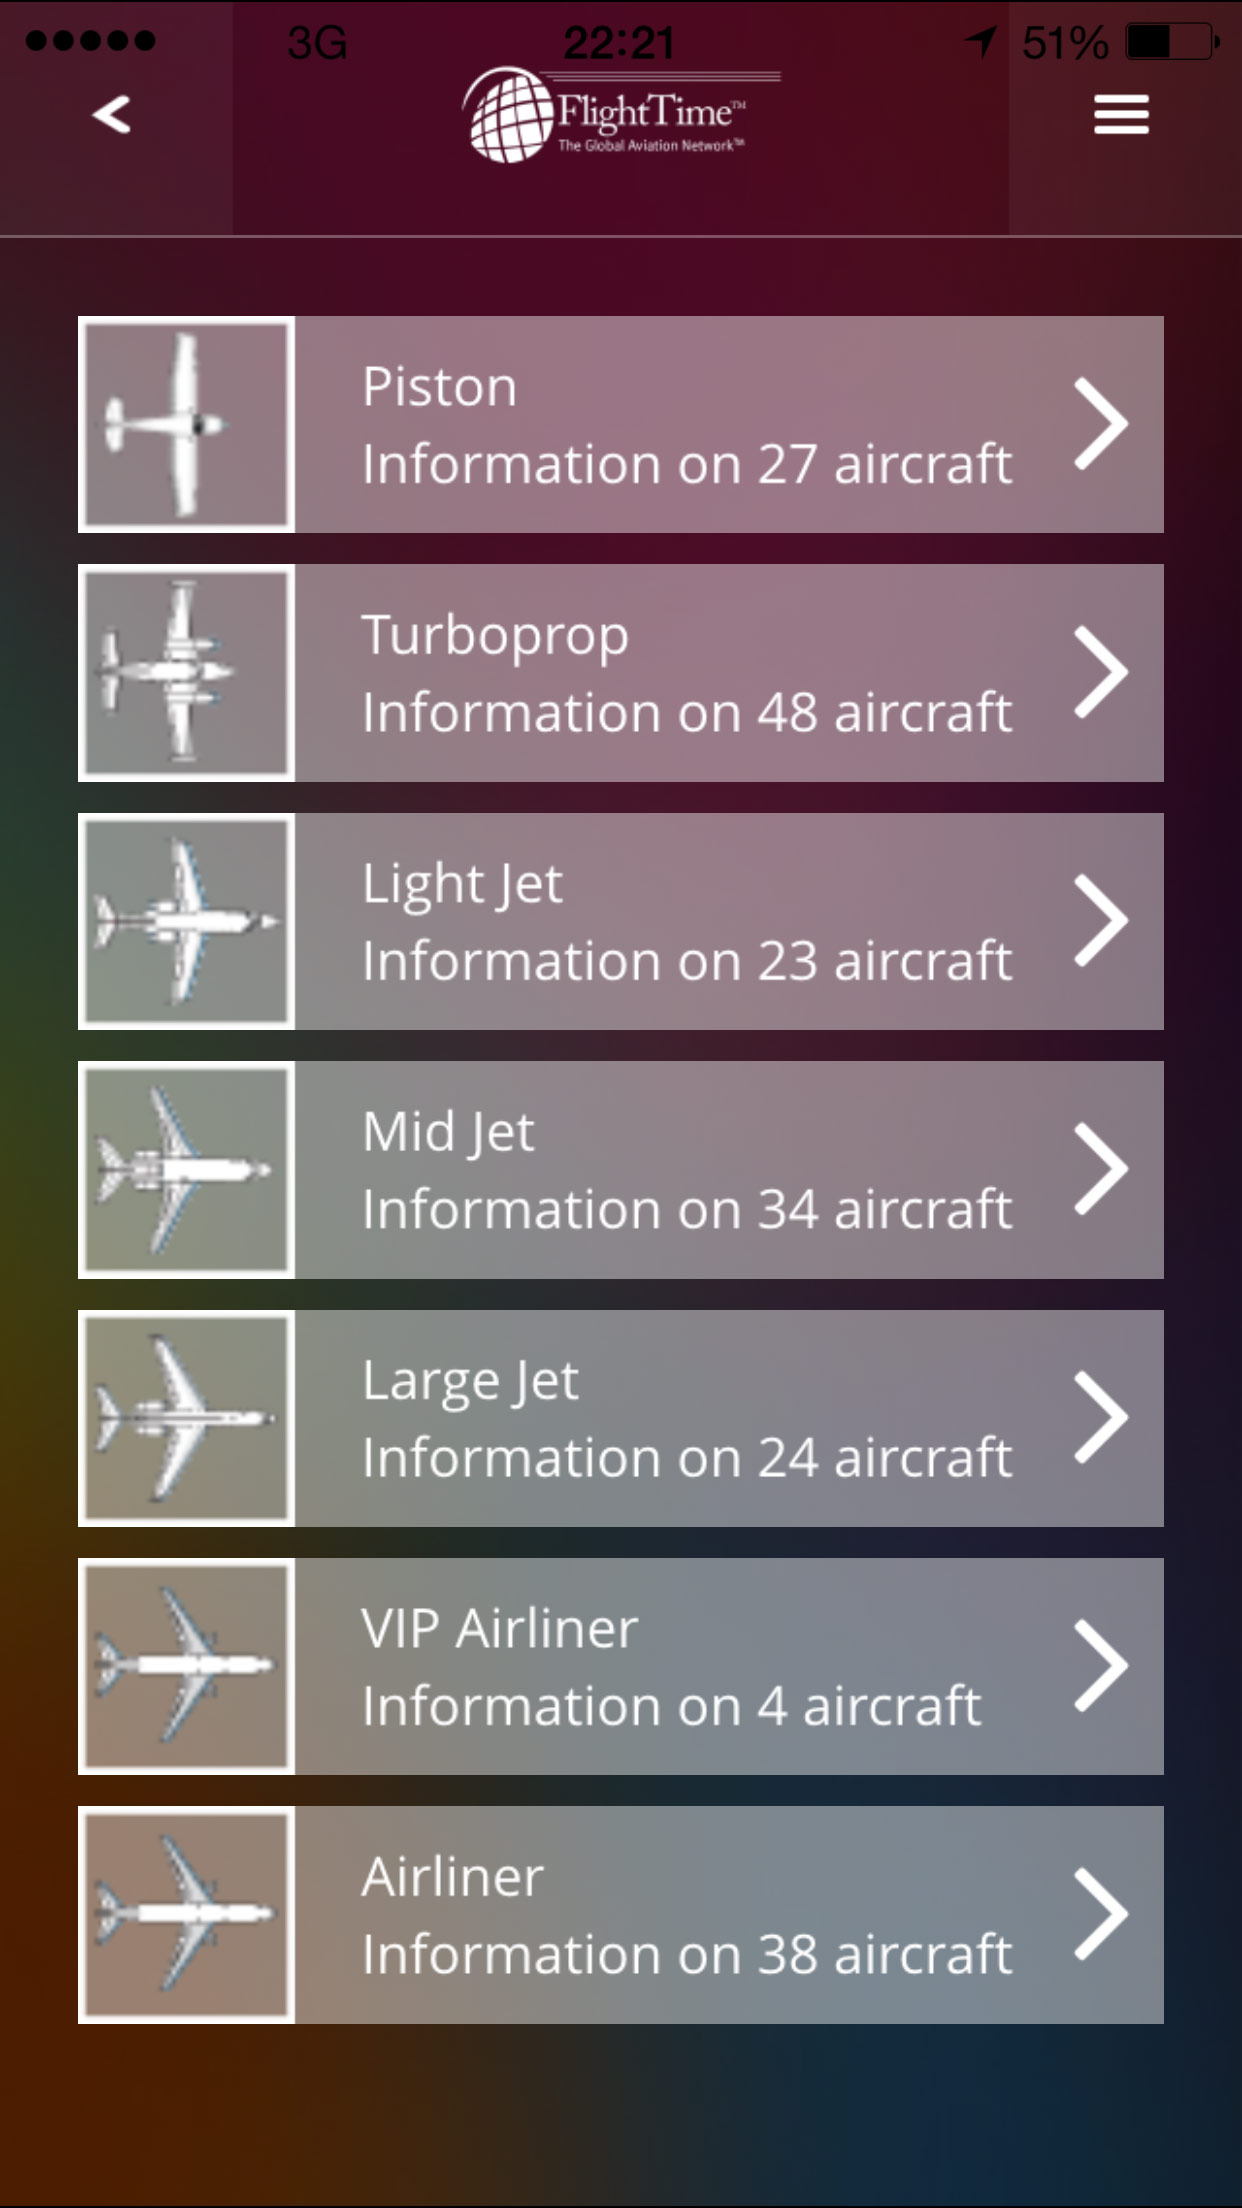 Aircraft Categories